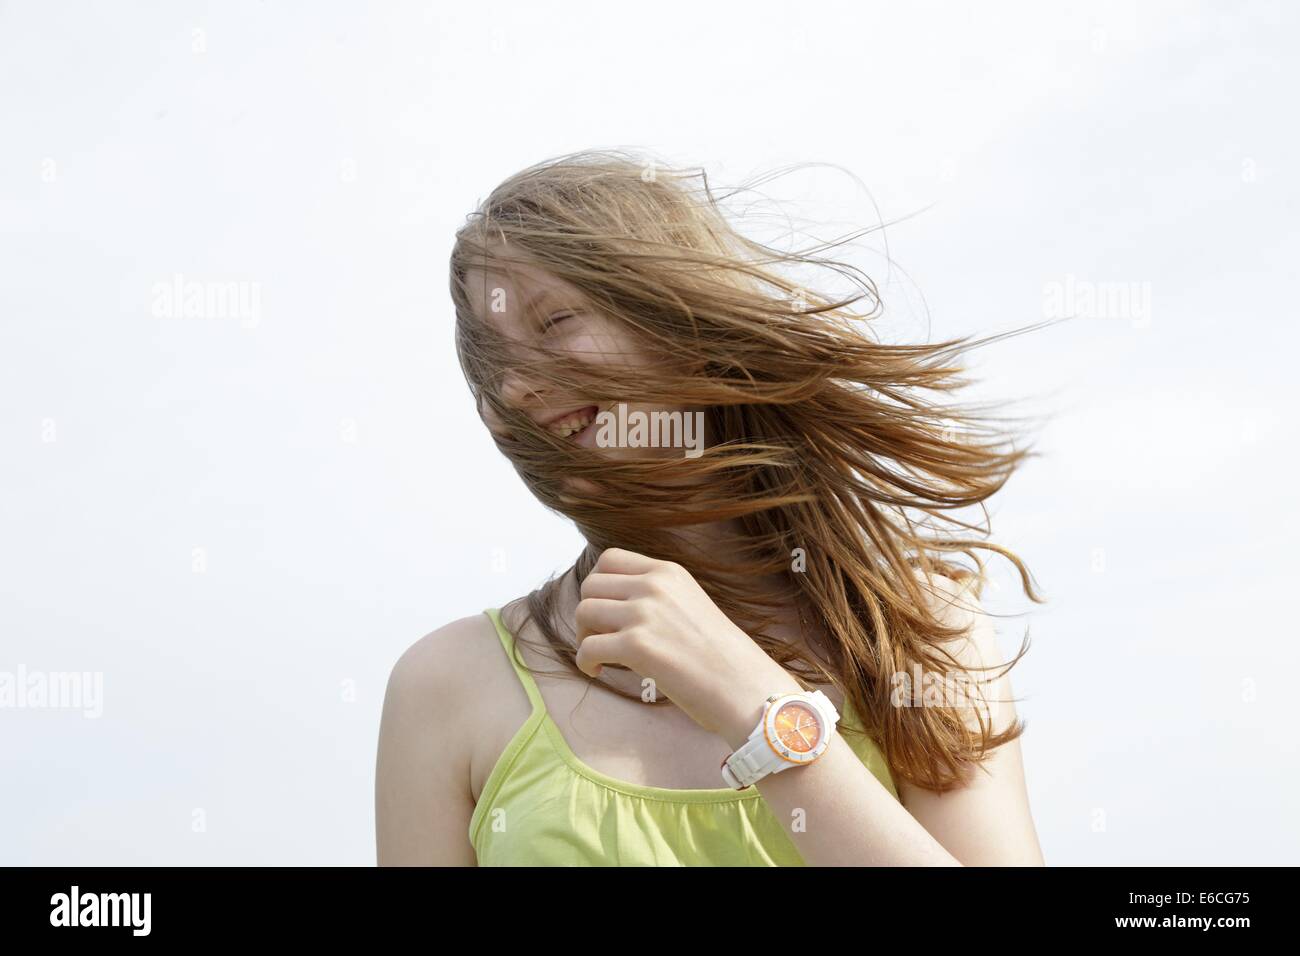 Ragazza adolescente i capelli al vento, Scharbeutz, Mar Baltico, Schleswig-Holstein, Germania Foto Stock